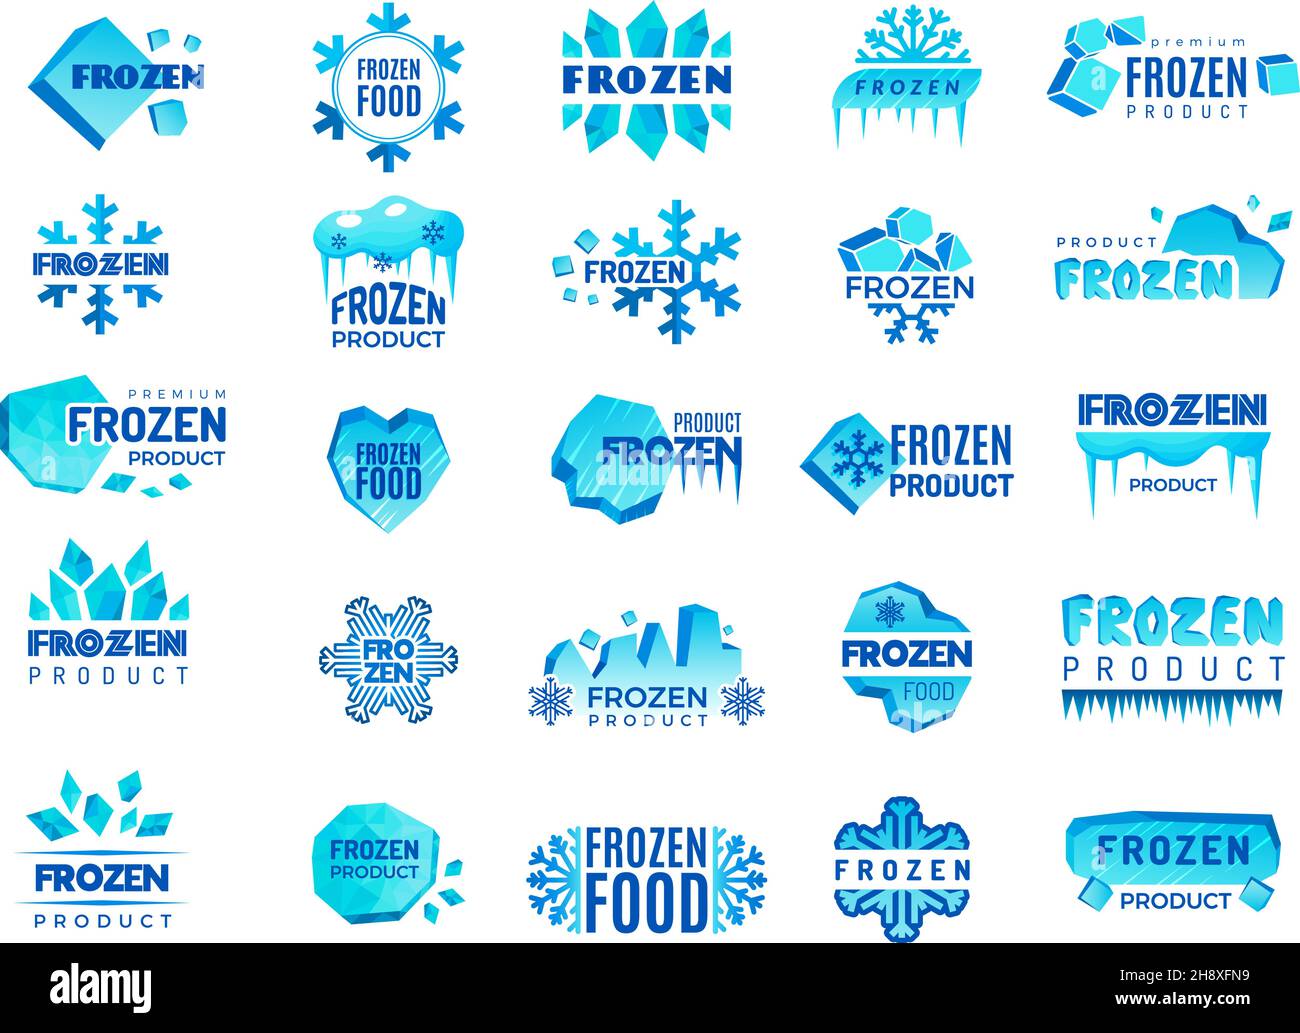 Eingefrorenes Produktlogo. Schnee und Winter Schneeflocken aus Eis stilisierte Symbole für Logo-Design kalte Lebensmittel Temperaturen aktuellen Vektor-Vorlagen Kollektion Stock Vektor